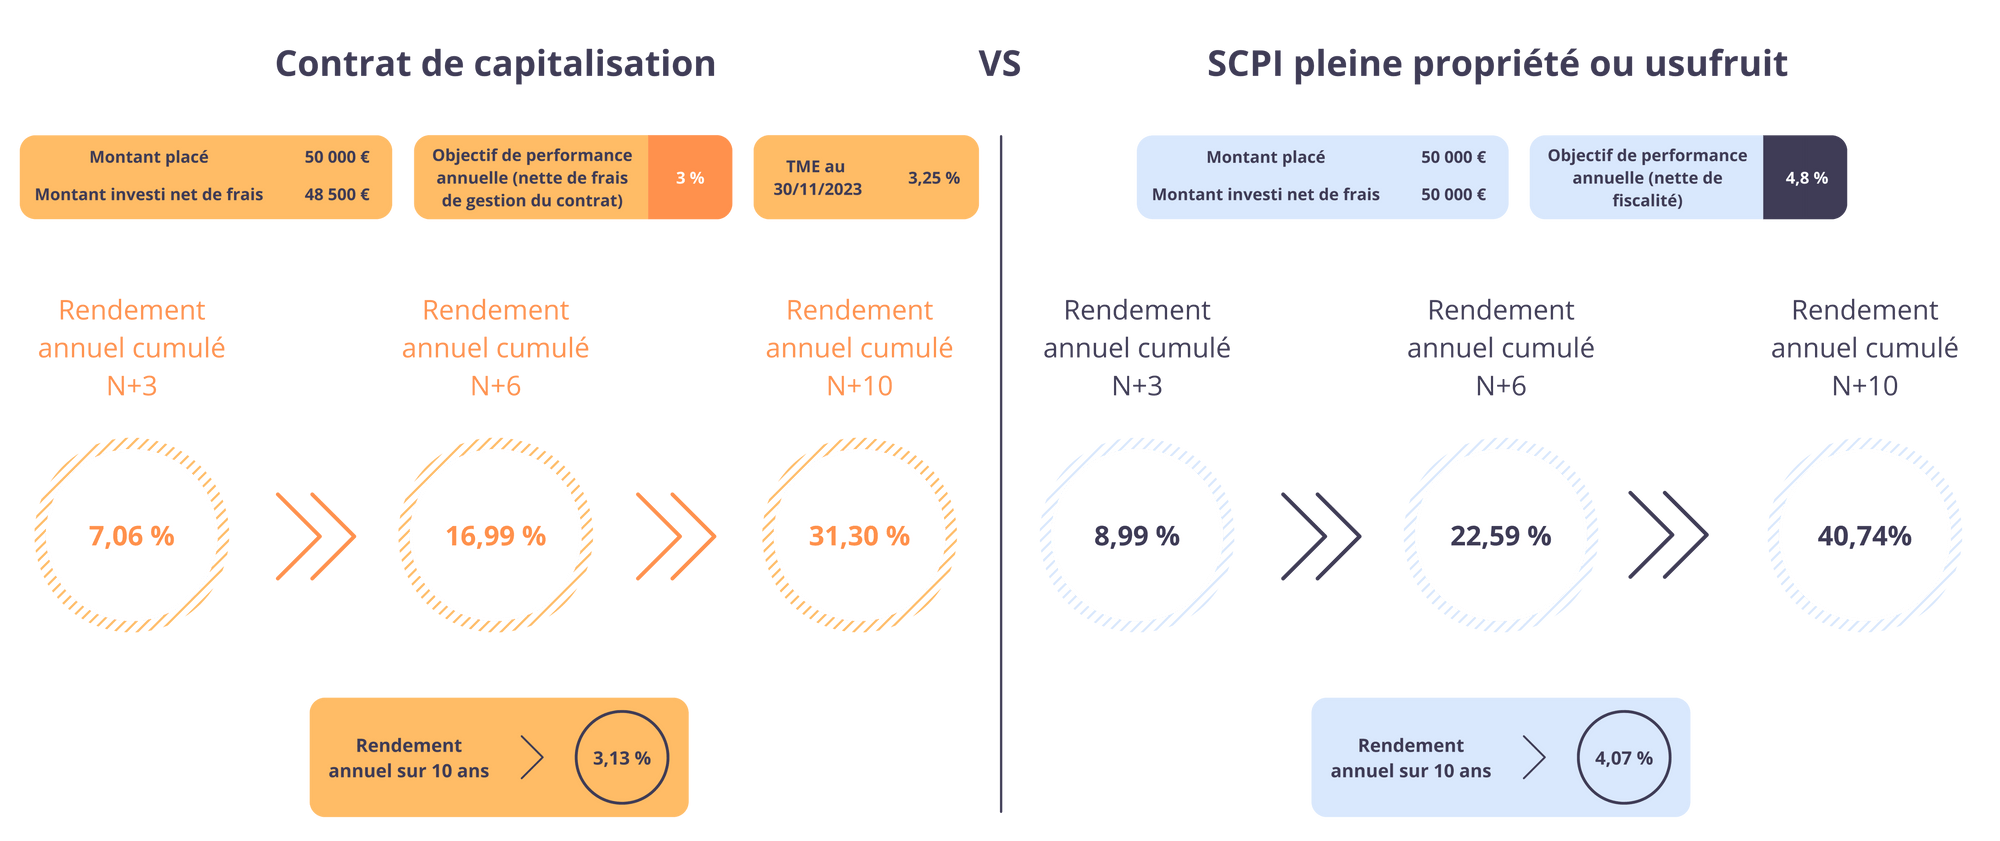 Comparaison entre un contrat de capitalisation et SCPI